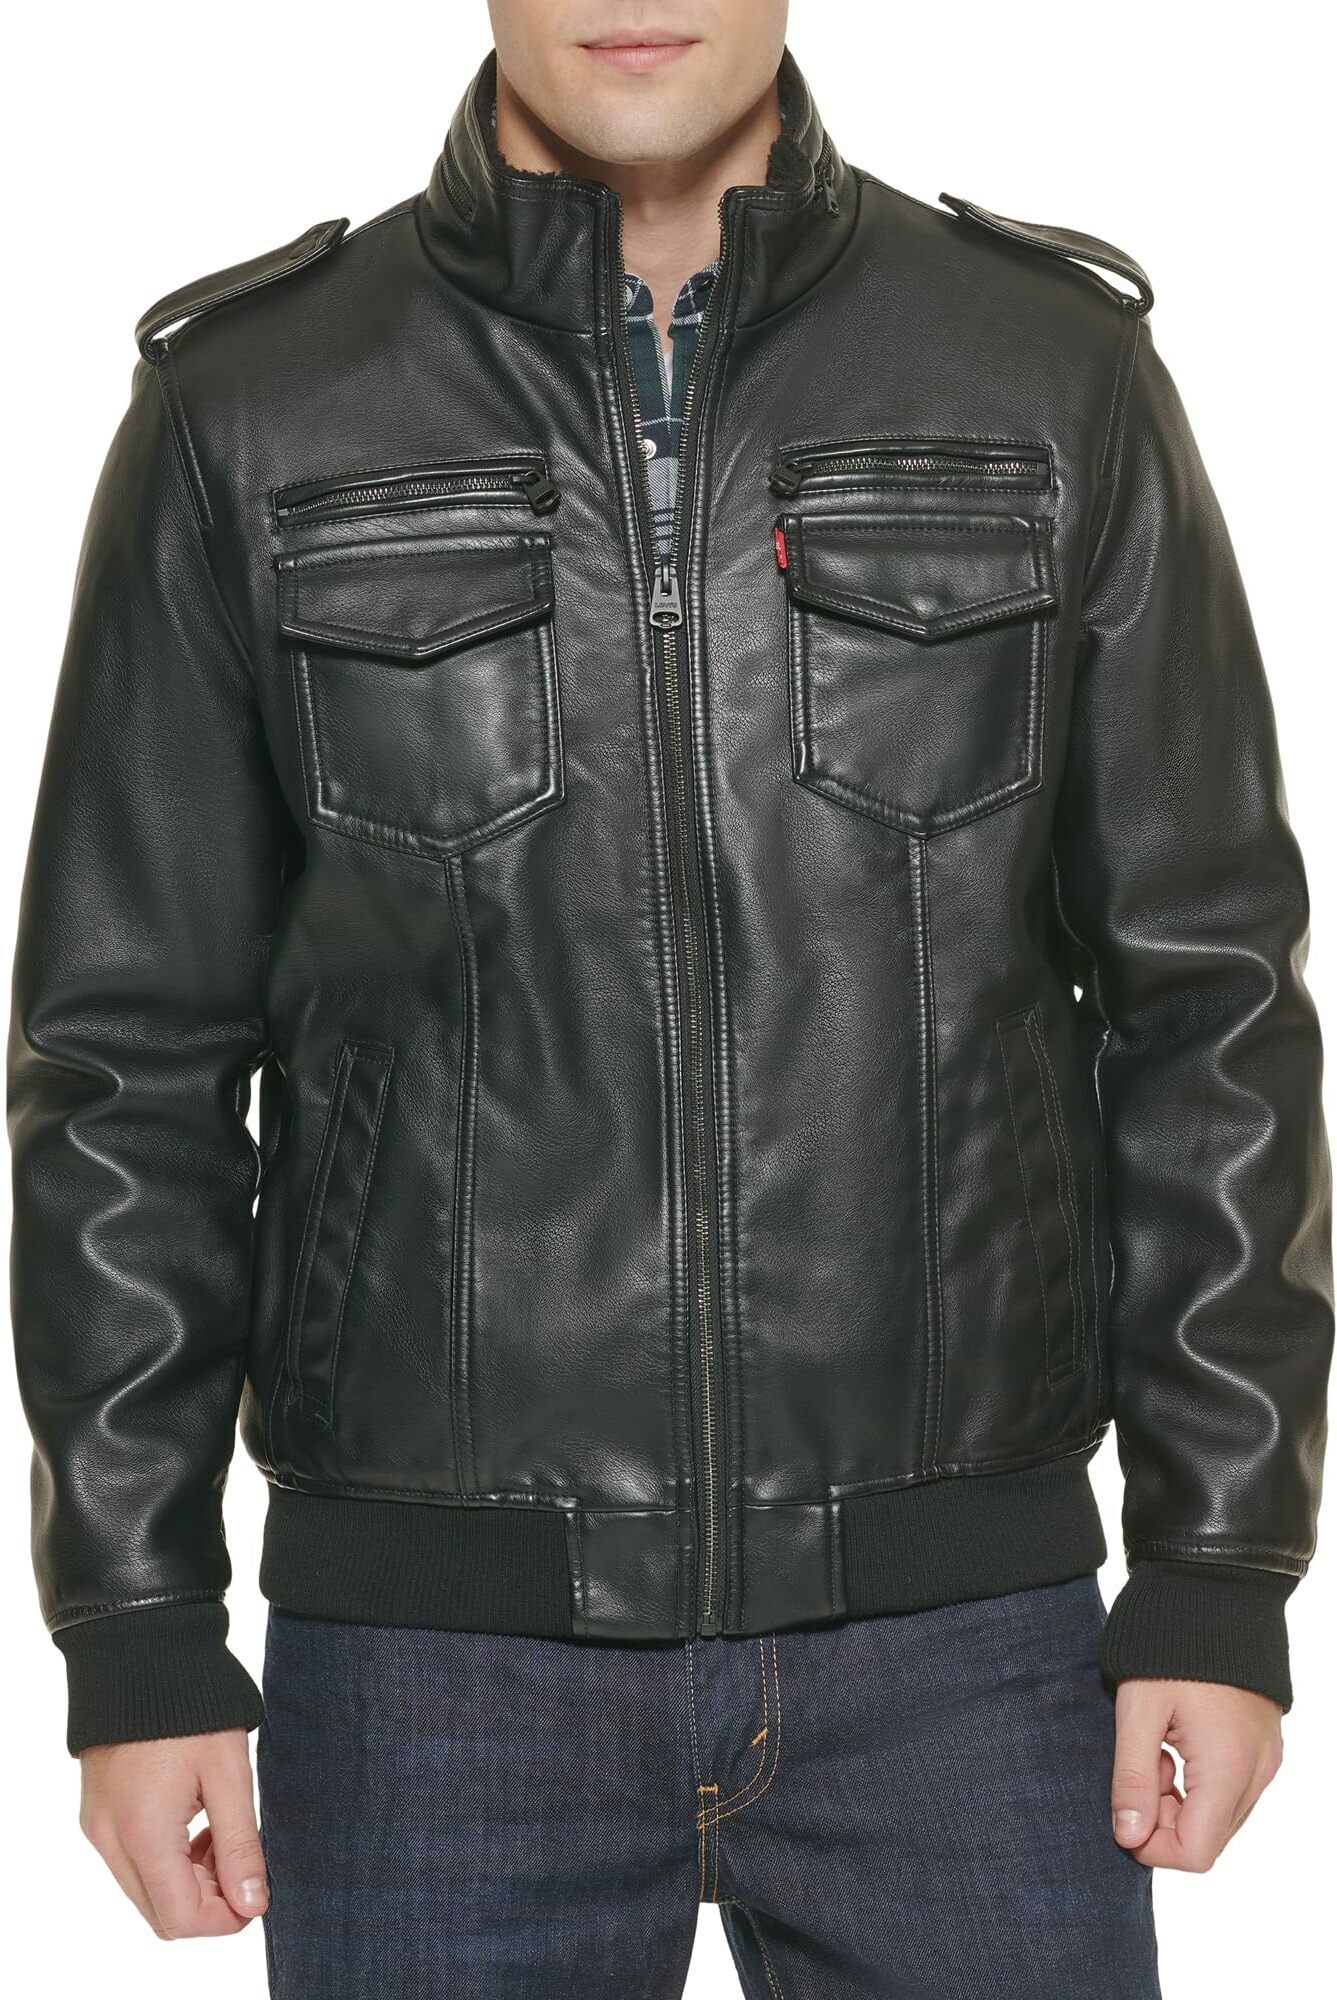 Кожаная куртка мужская Levi's LM8RU476-BLK черная M